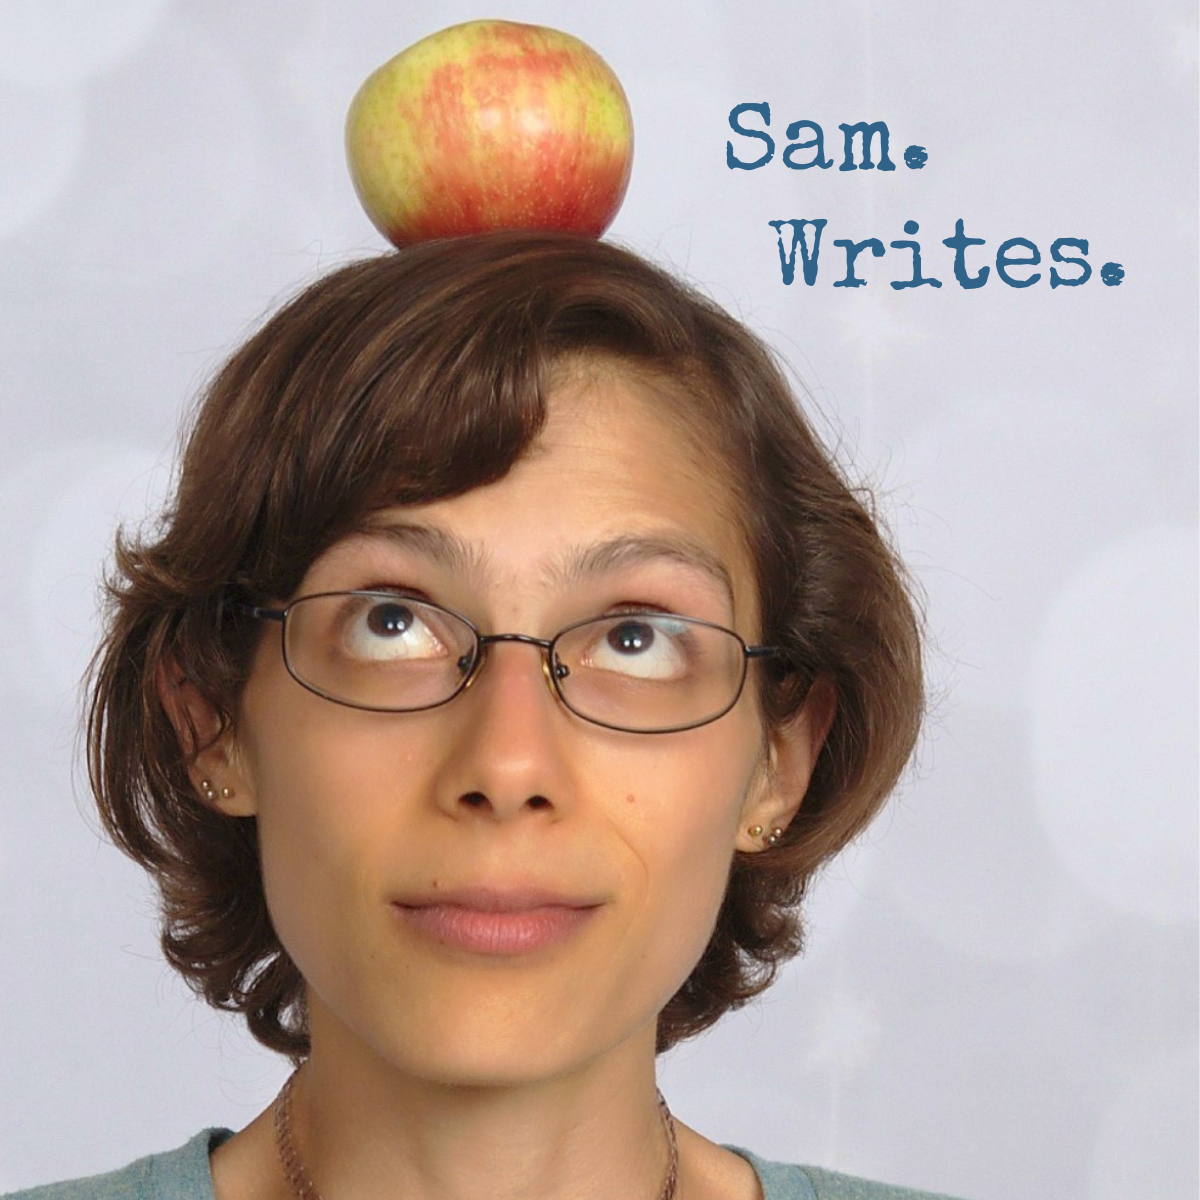 Sam. Writes.